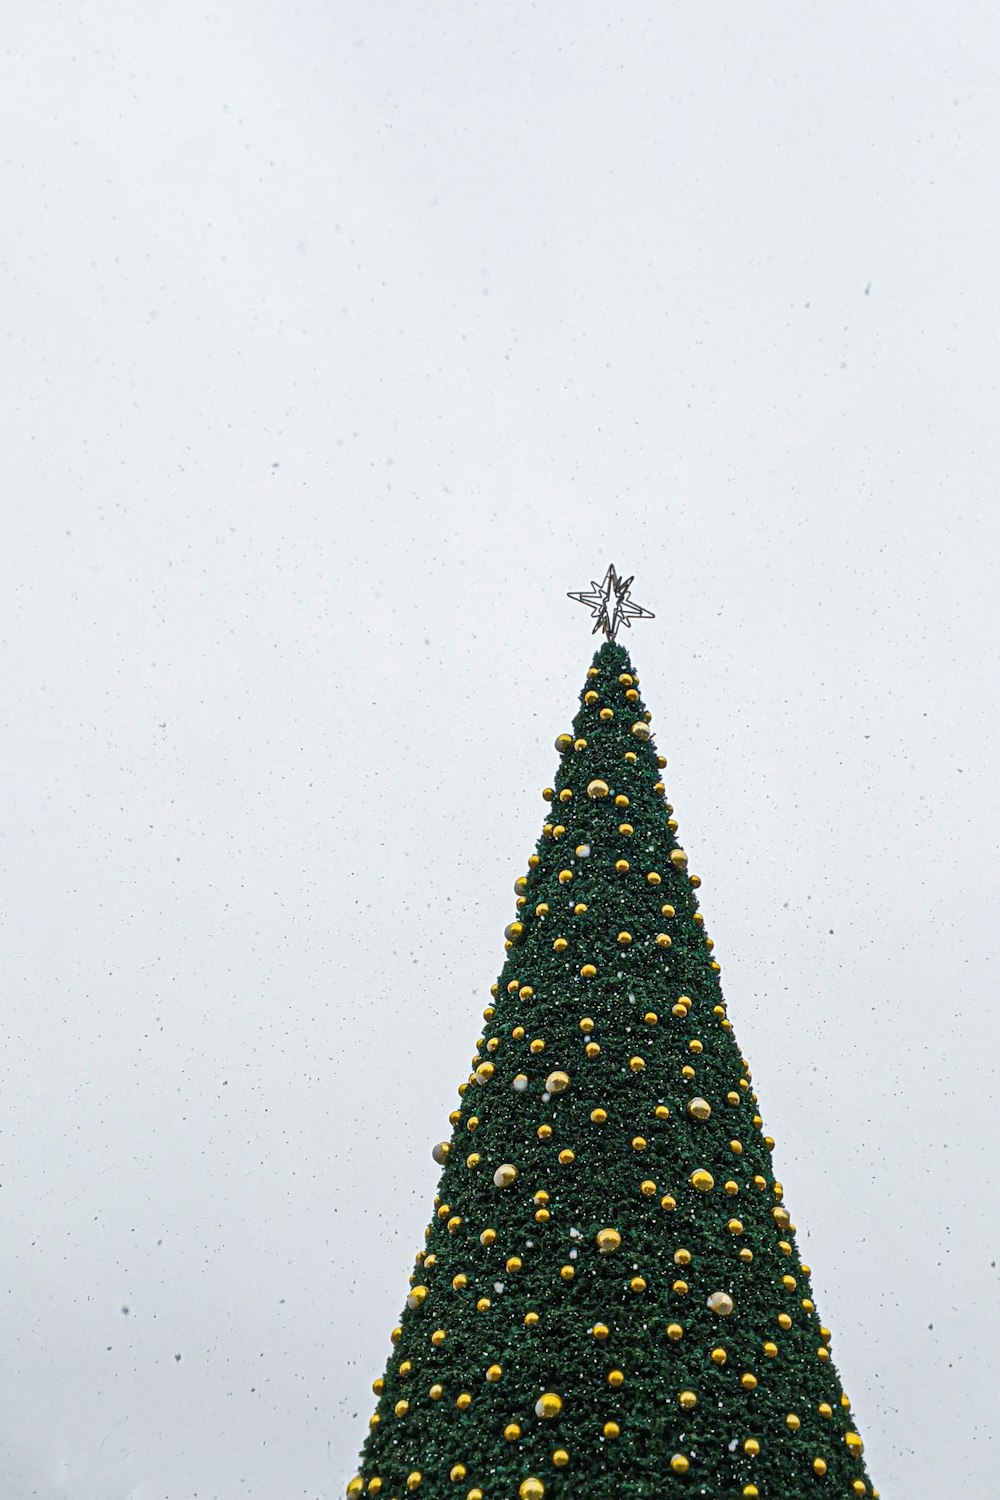 노란색 값싼 물건과 은색 별 토퍼가 있는 녹색 크리스마스 트리의 로우 앵글 사진